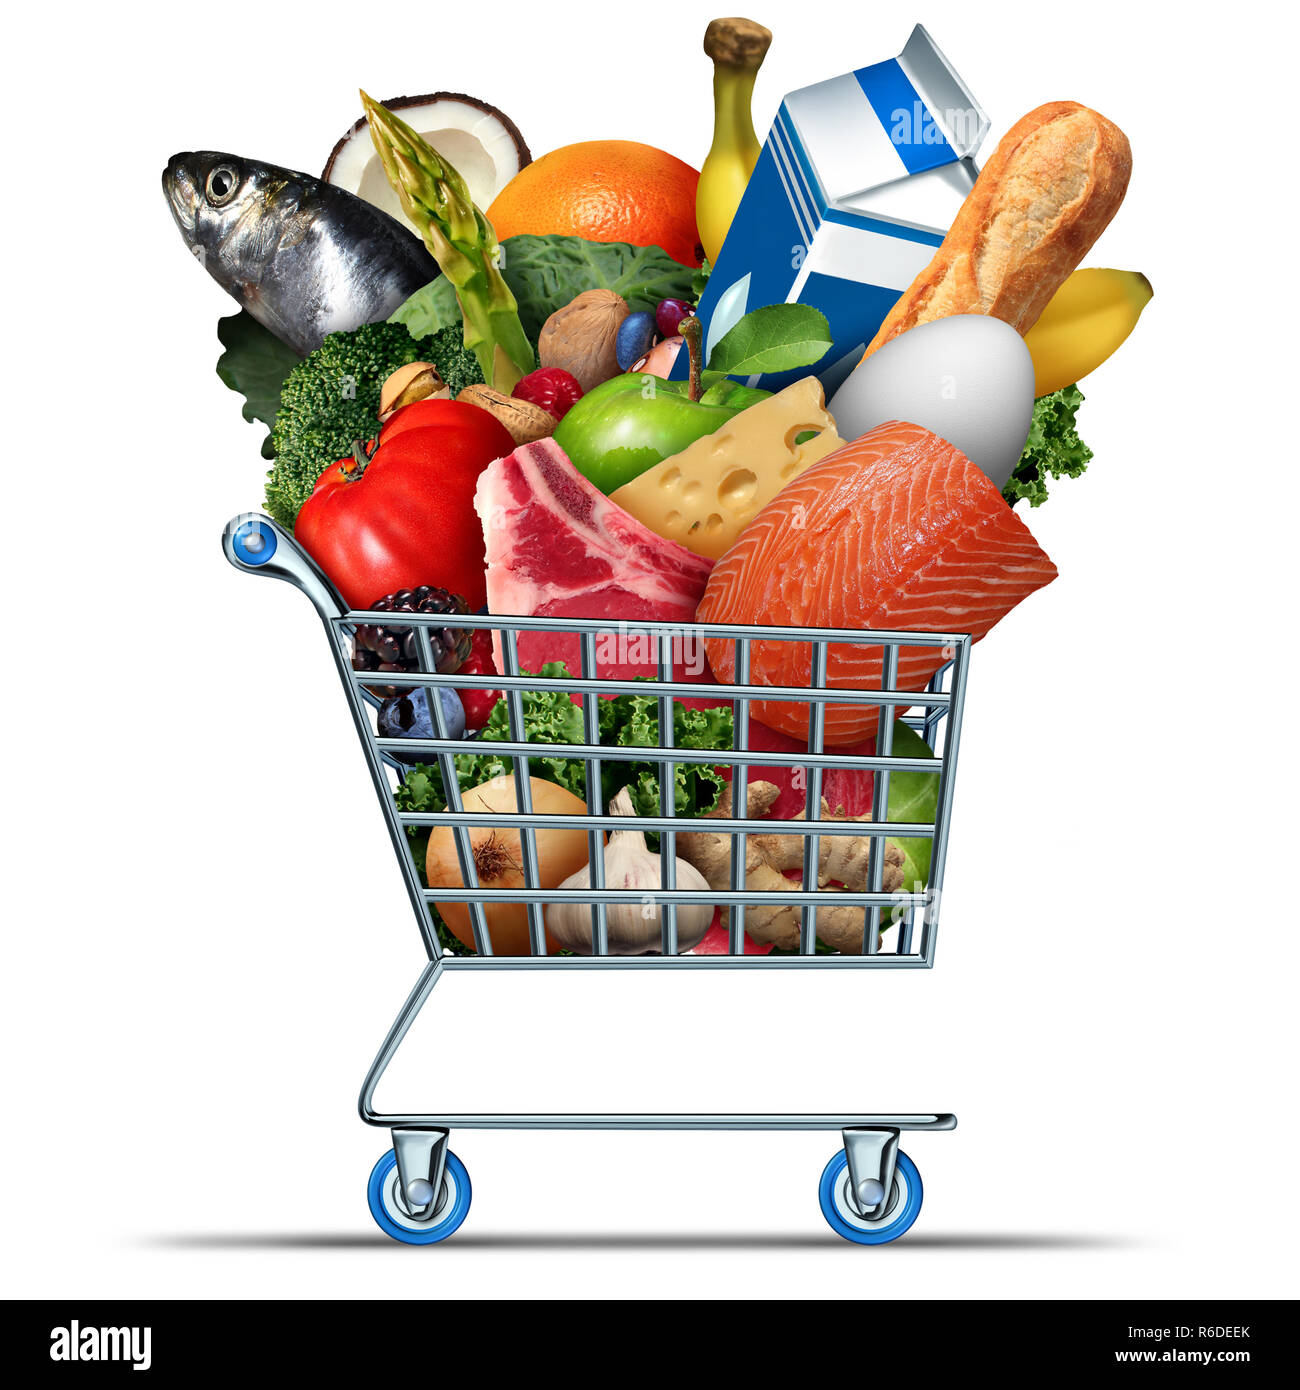 Lebensmittel und Lebensmittel Symbol als Supermarkt Warenkorb mit Milch, Eier, Käse, Fleisch, Brot, Fisch, Gemüse und Obst. Stockfoto